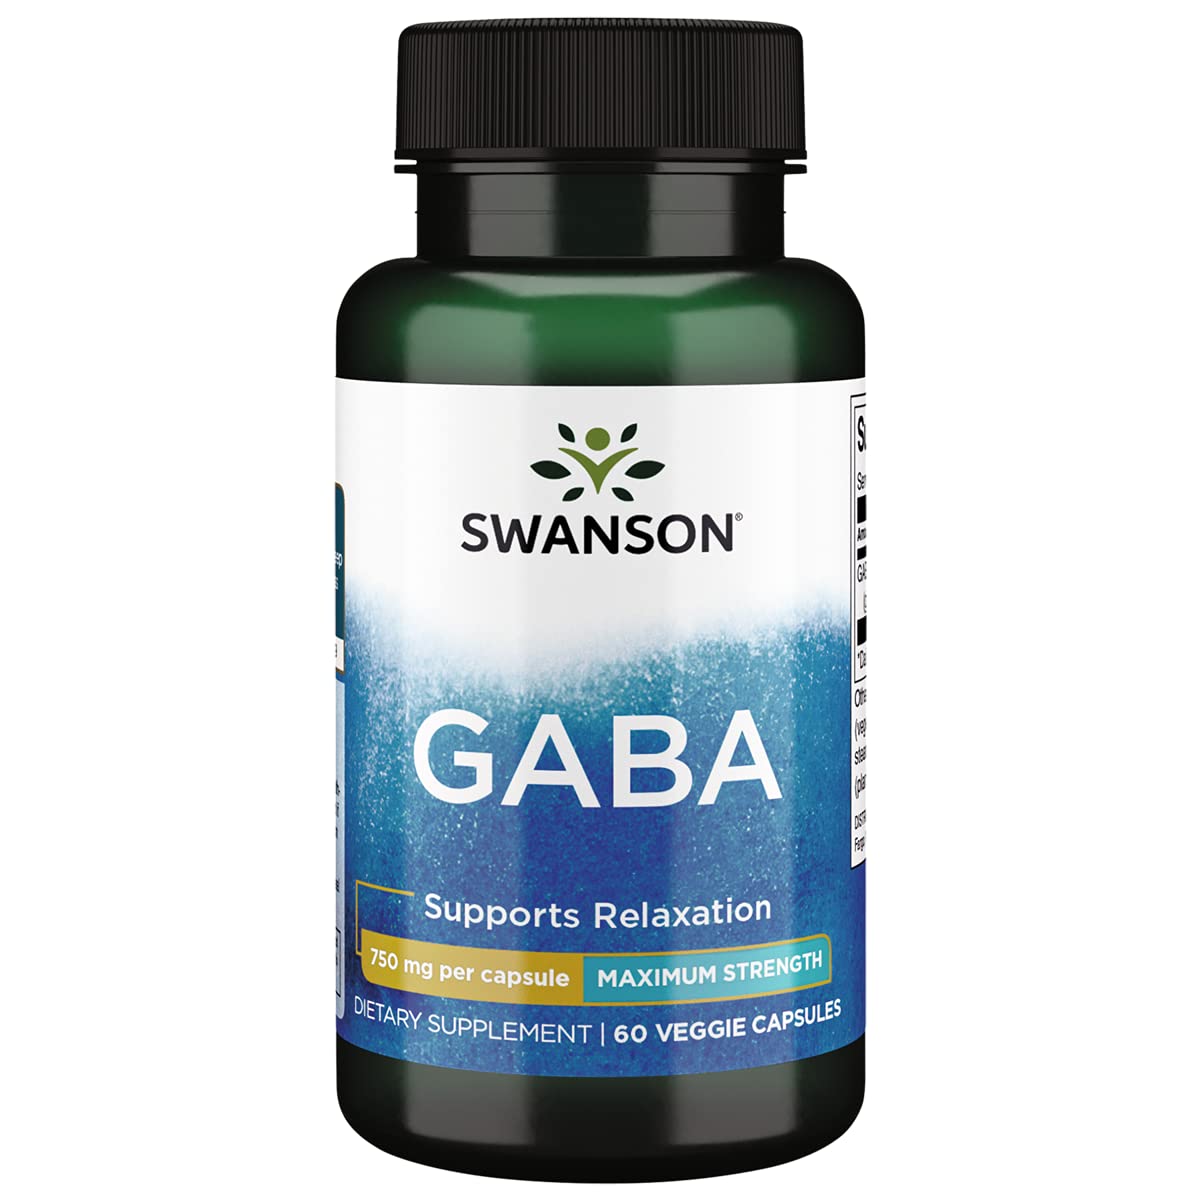 Swanson Gaba Maximum Strength 60 Veggie Capsules 750 mg